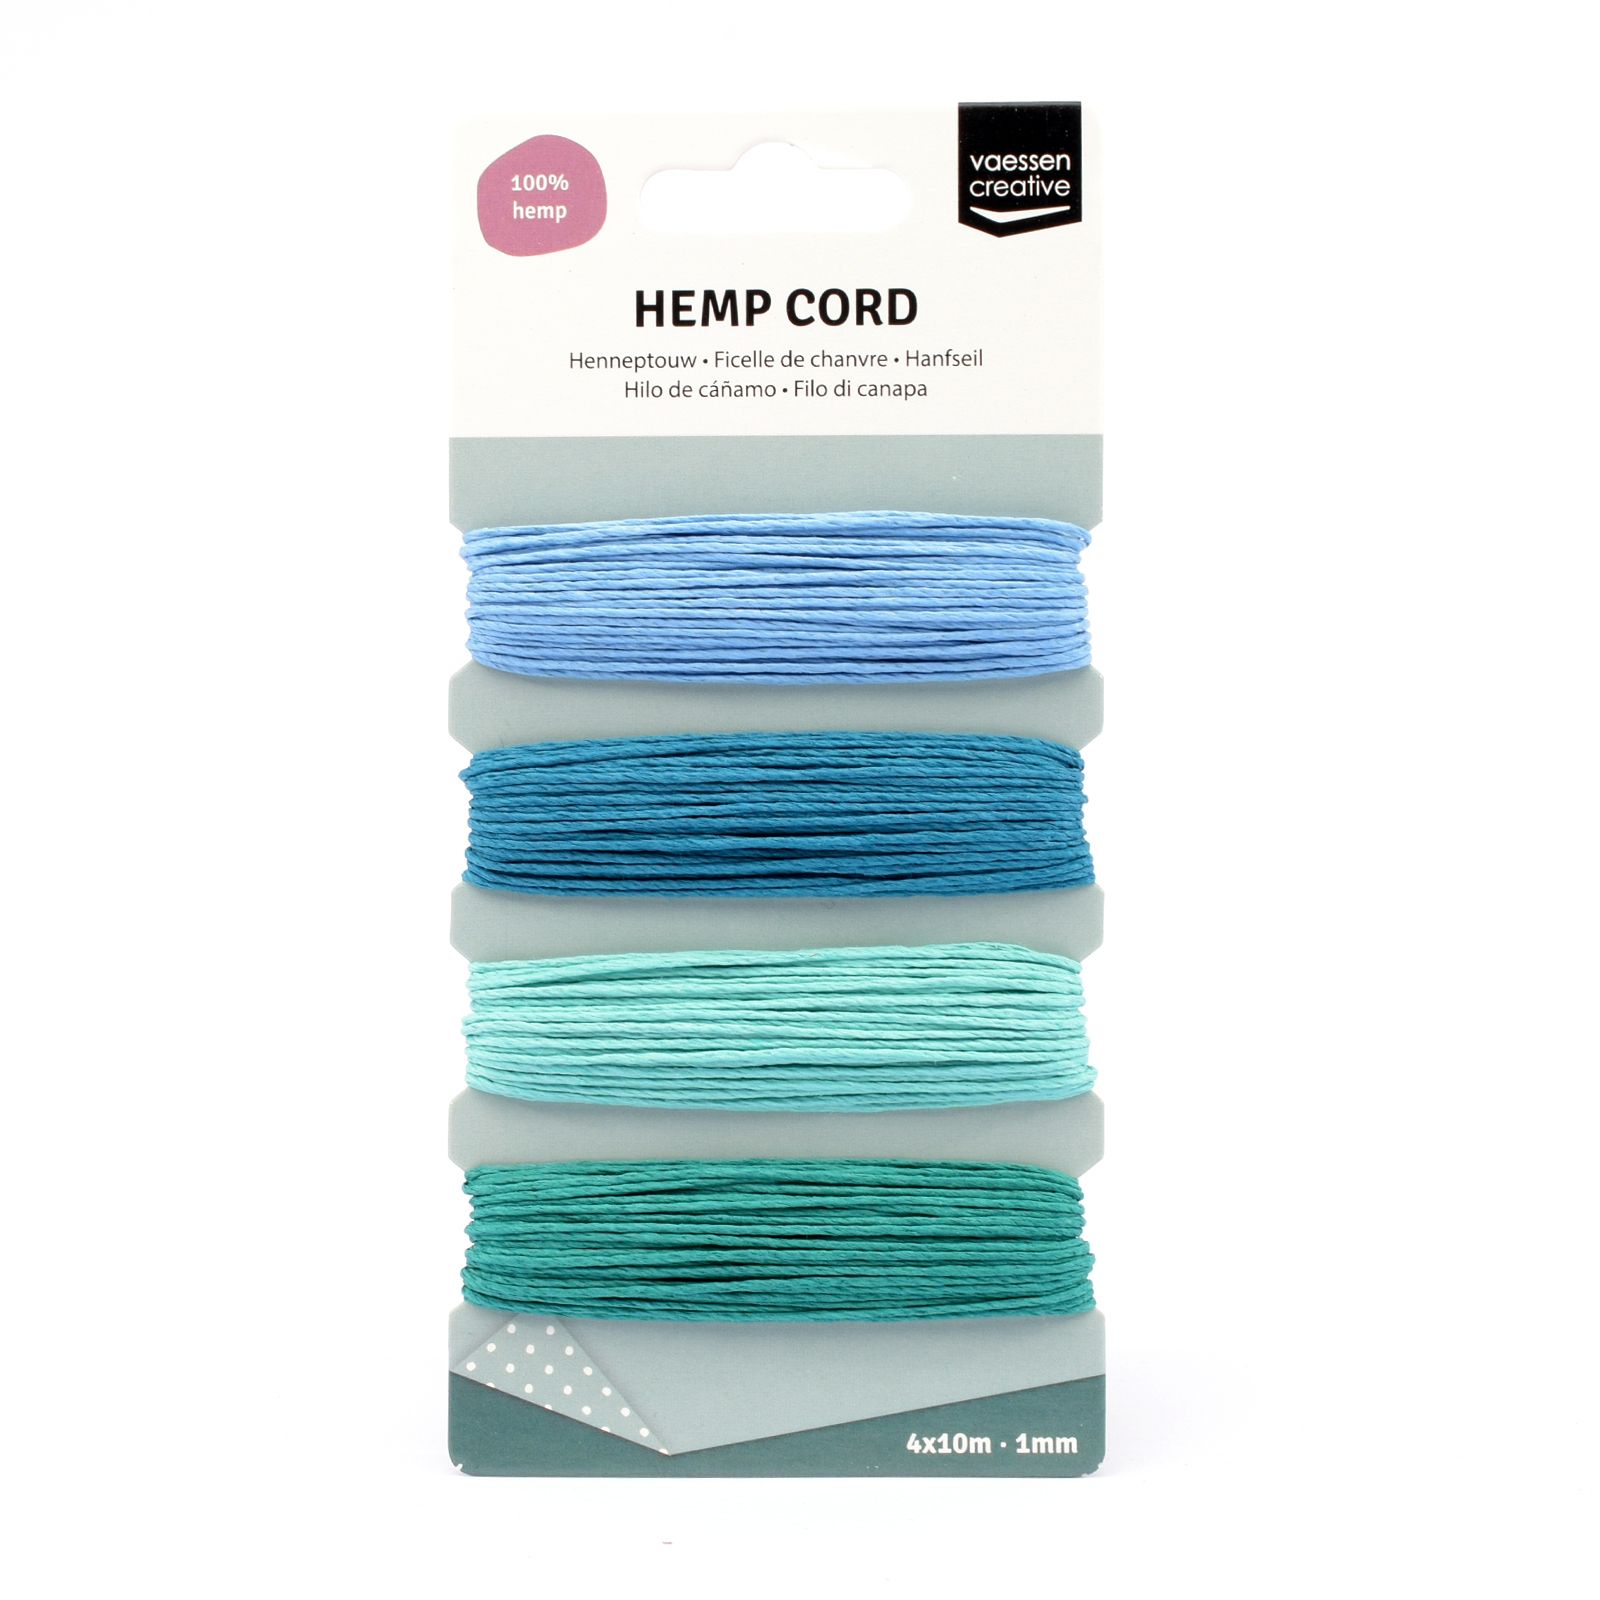 Vaessen Creative • Hemp Cord Assortiment 4x10m Blue/Green